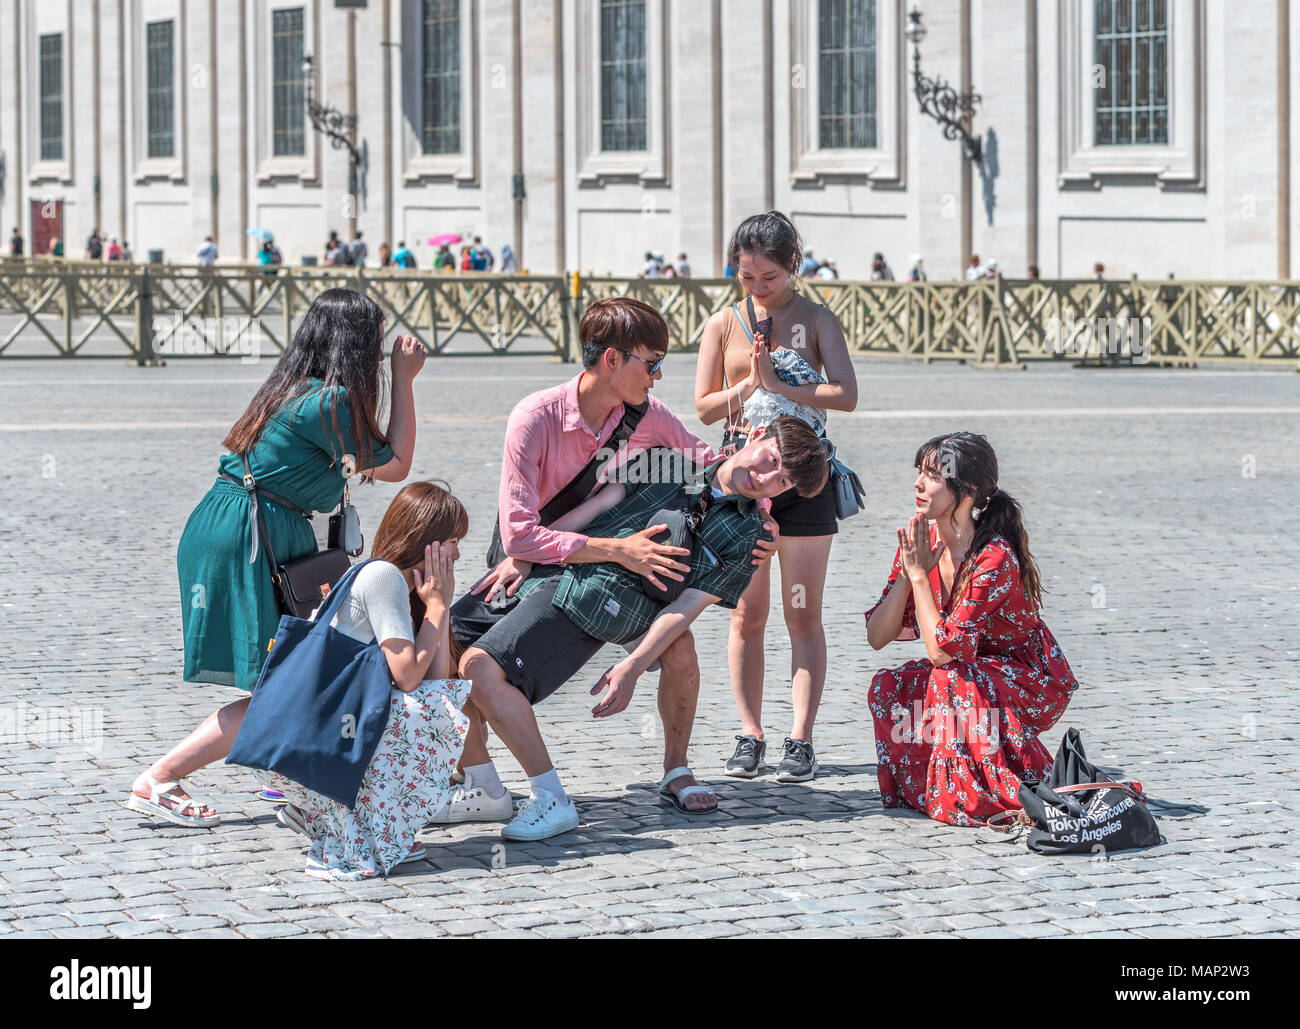 Un grupo de jóvenes chinos divirtiéndose en la plaza de San Pietro. Foto de stock